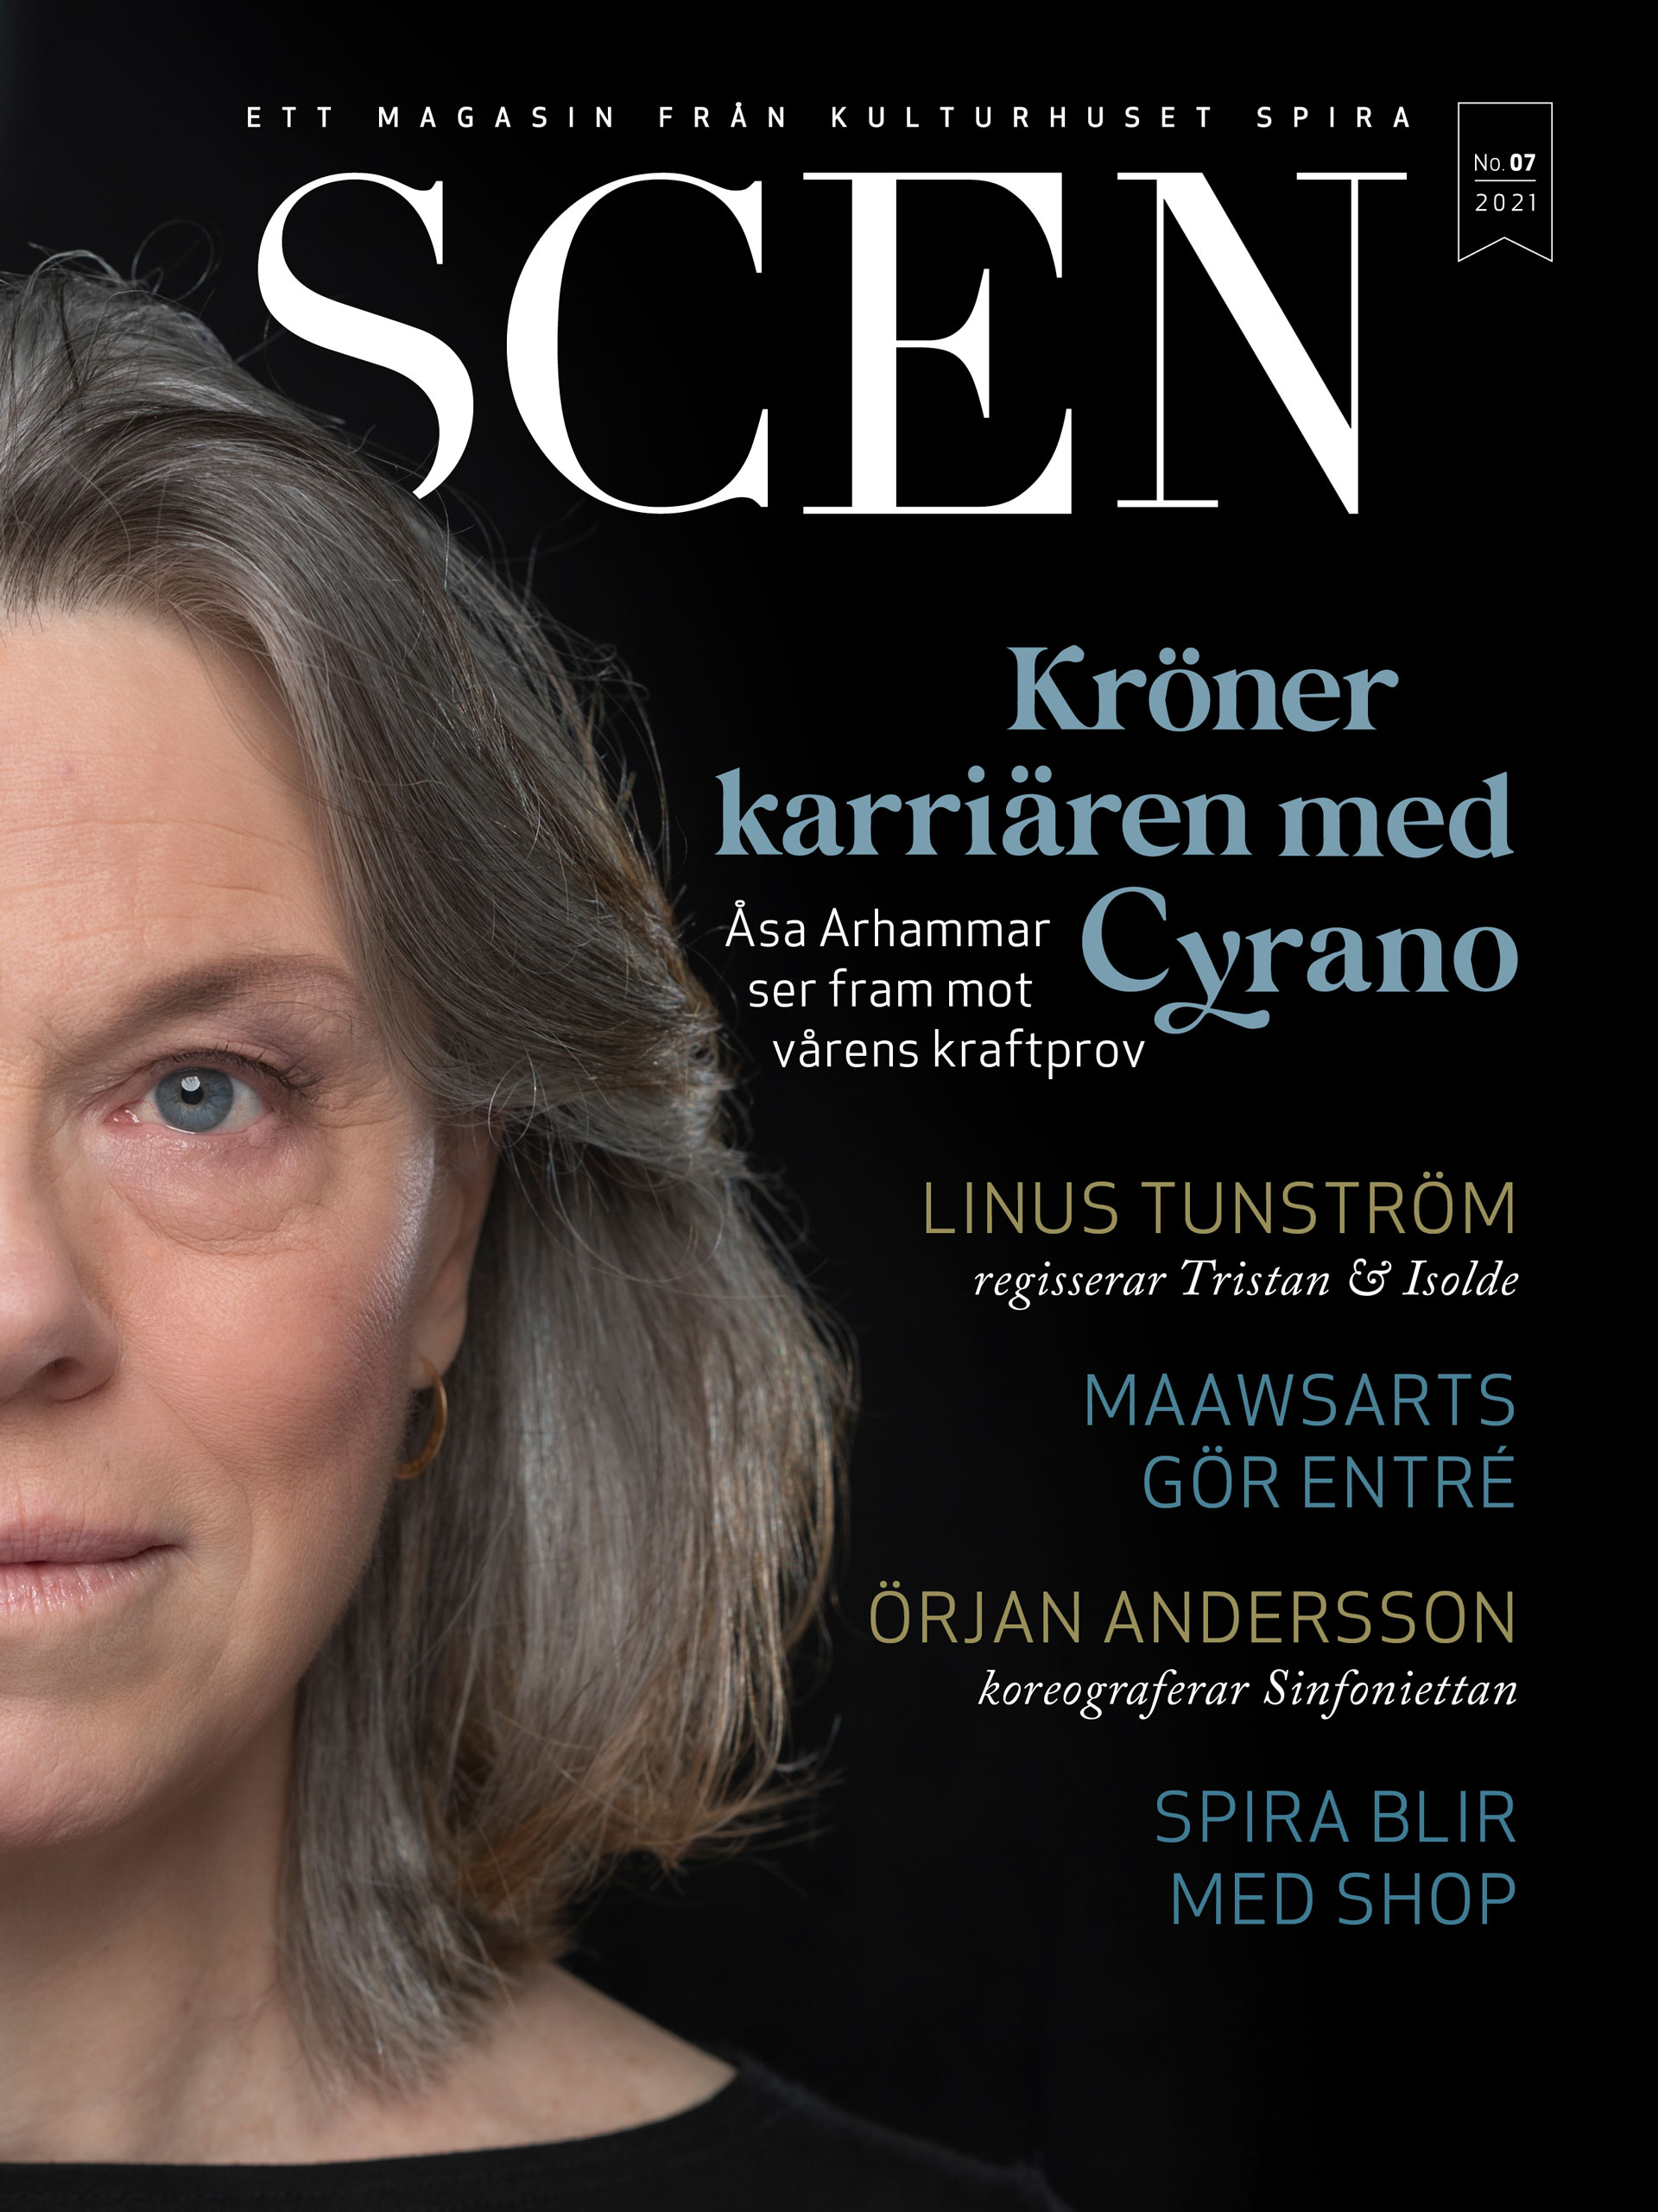 Ettan på magasinet Scen visar halva ansiktet på Åsa Arhammar, privat.